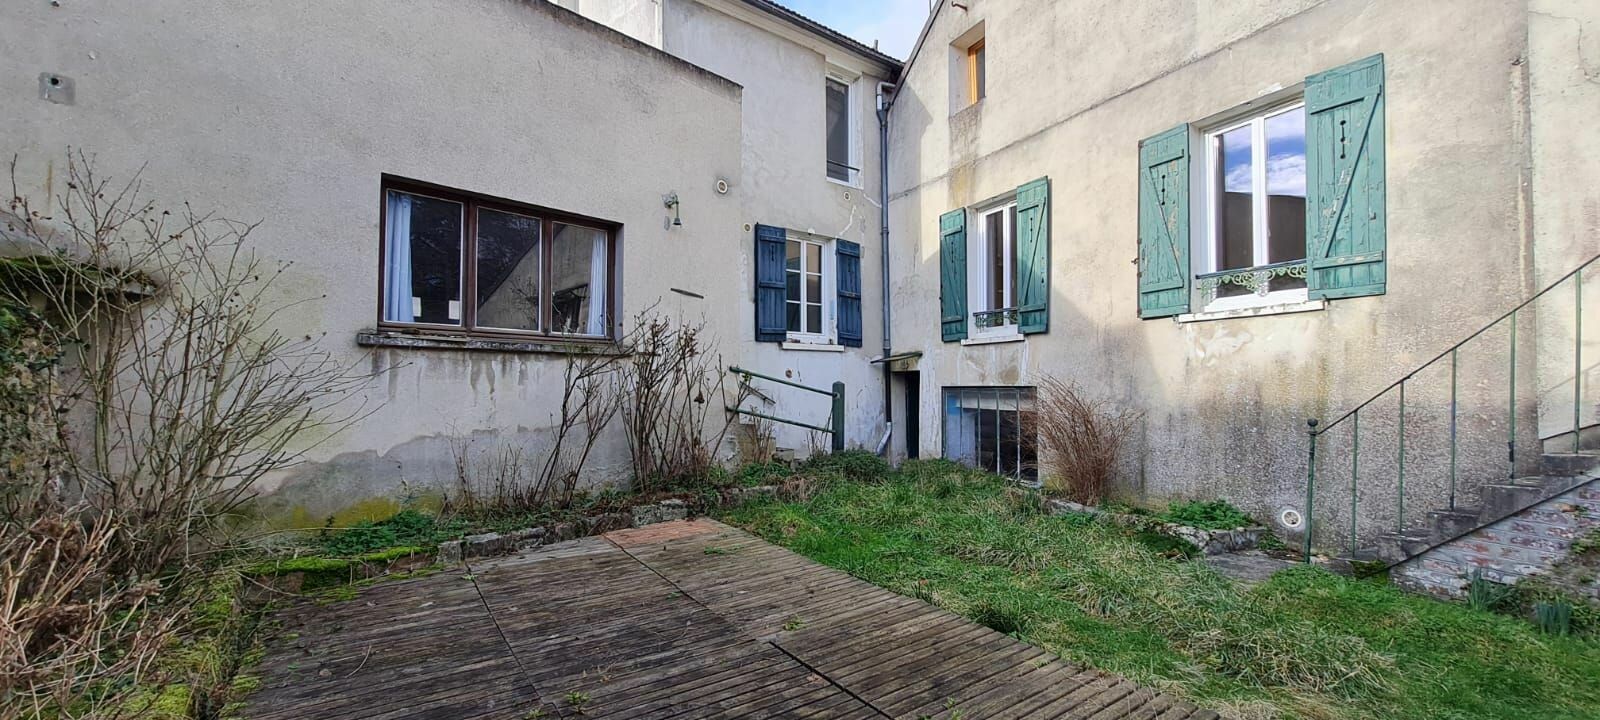 Maison à vendre 2 150m2 à Saâcy-sur-Marne vignette-2